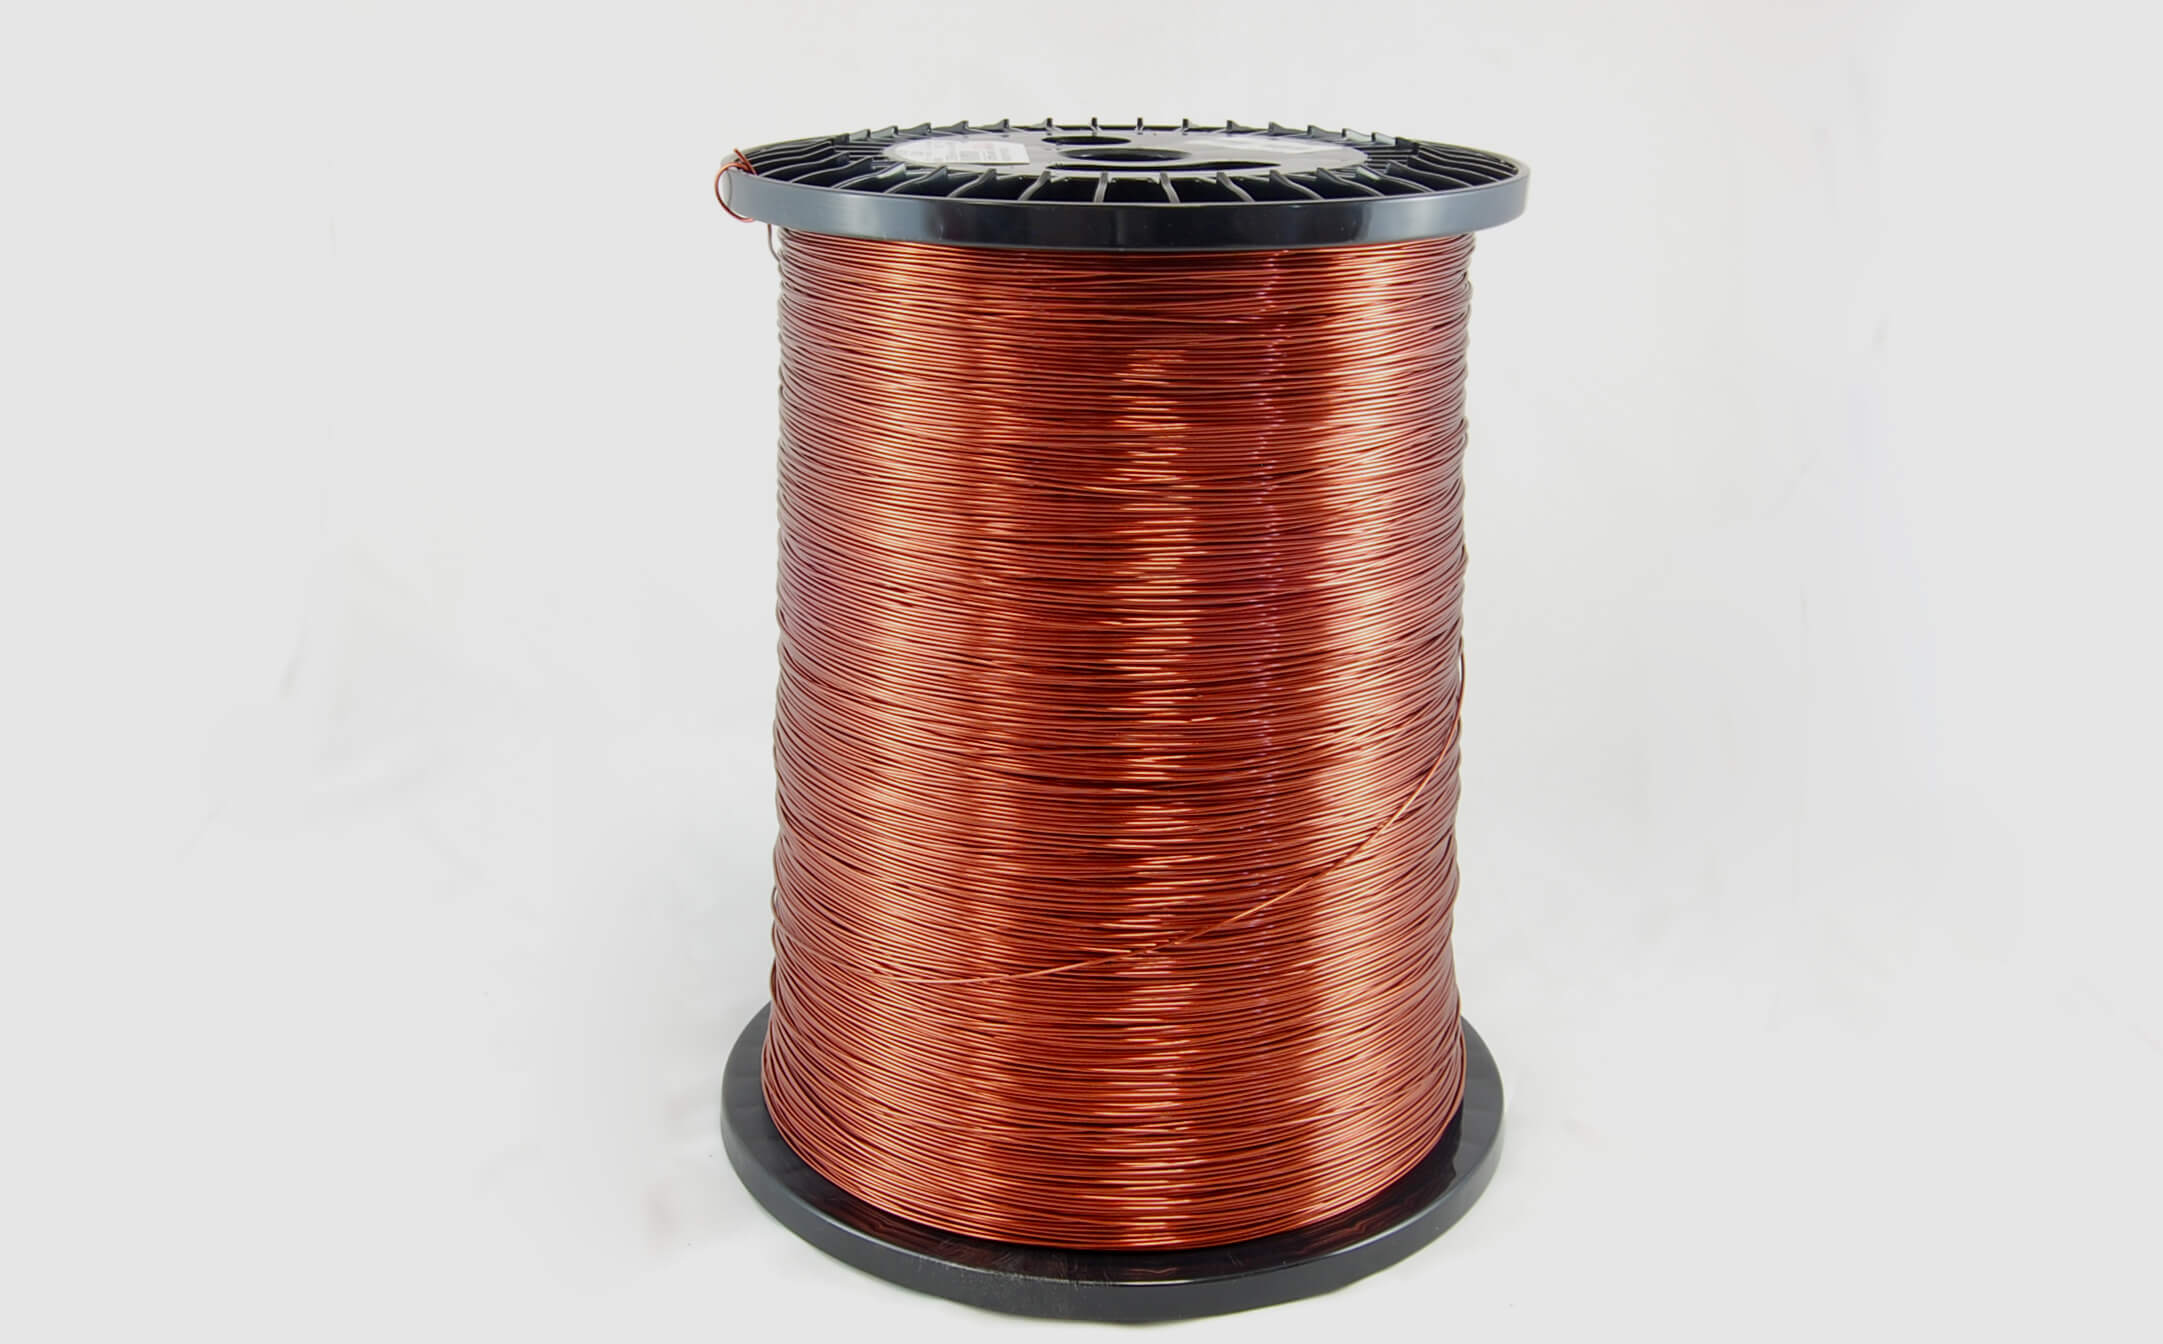 #20 Heavy Super Hyslik 200 Round HTAIH MW 35 Copper Magnet Wire 200°C, copper, 85 LB pail (average wght.)